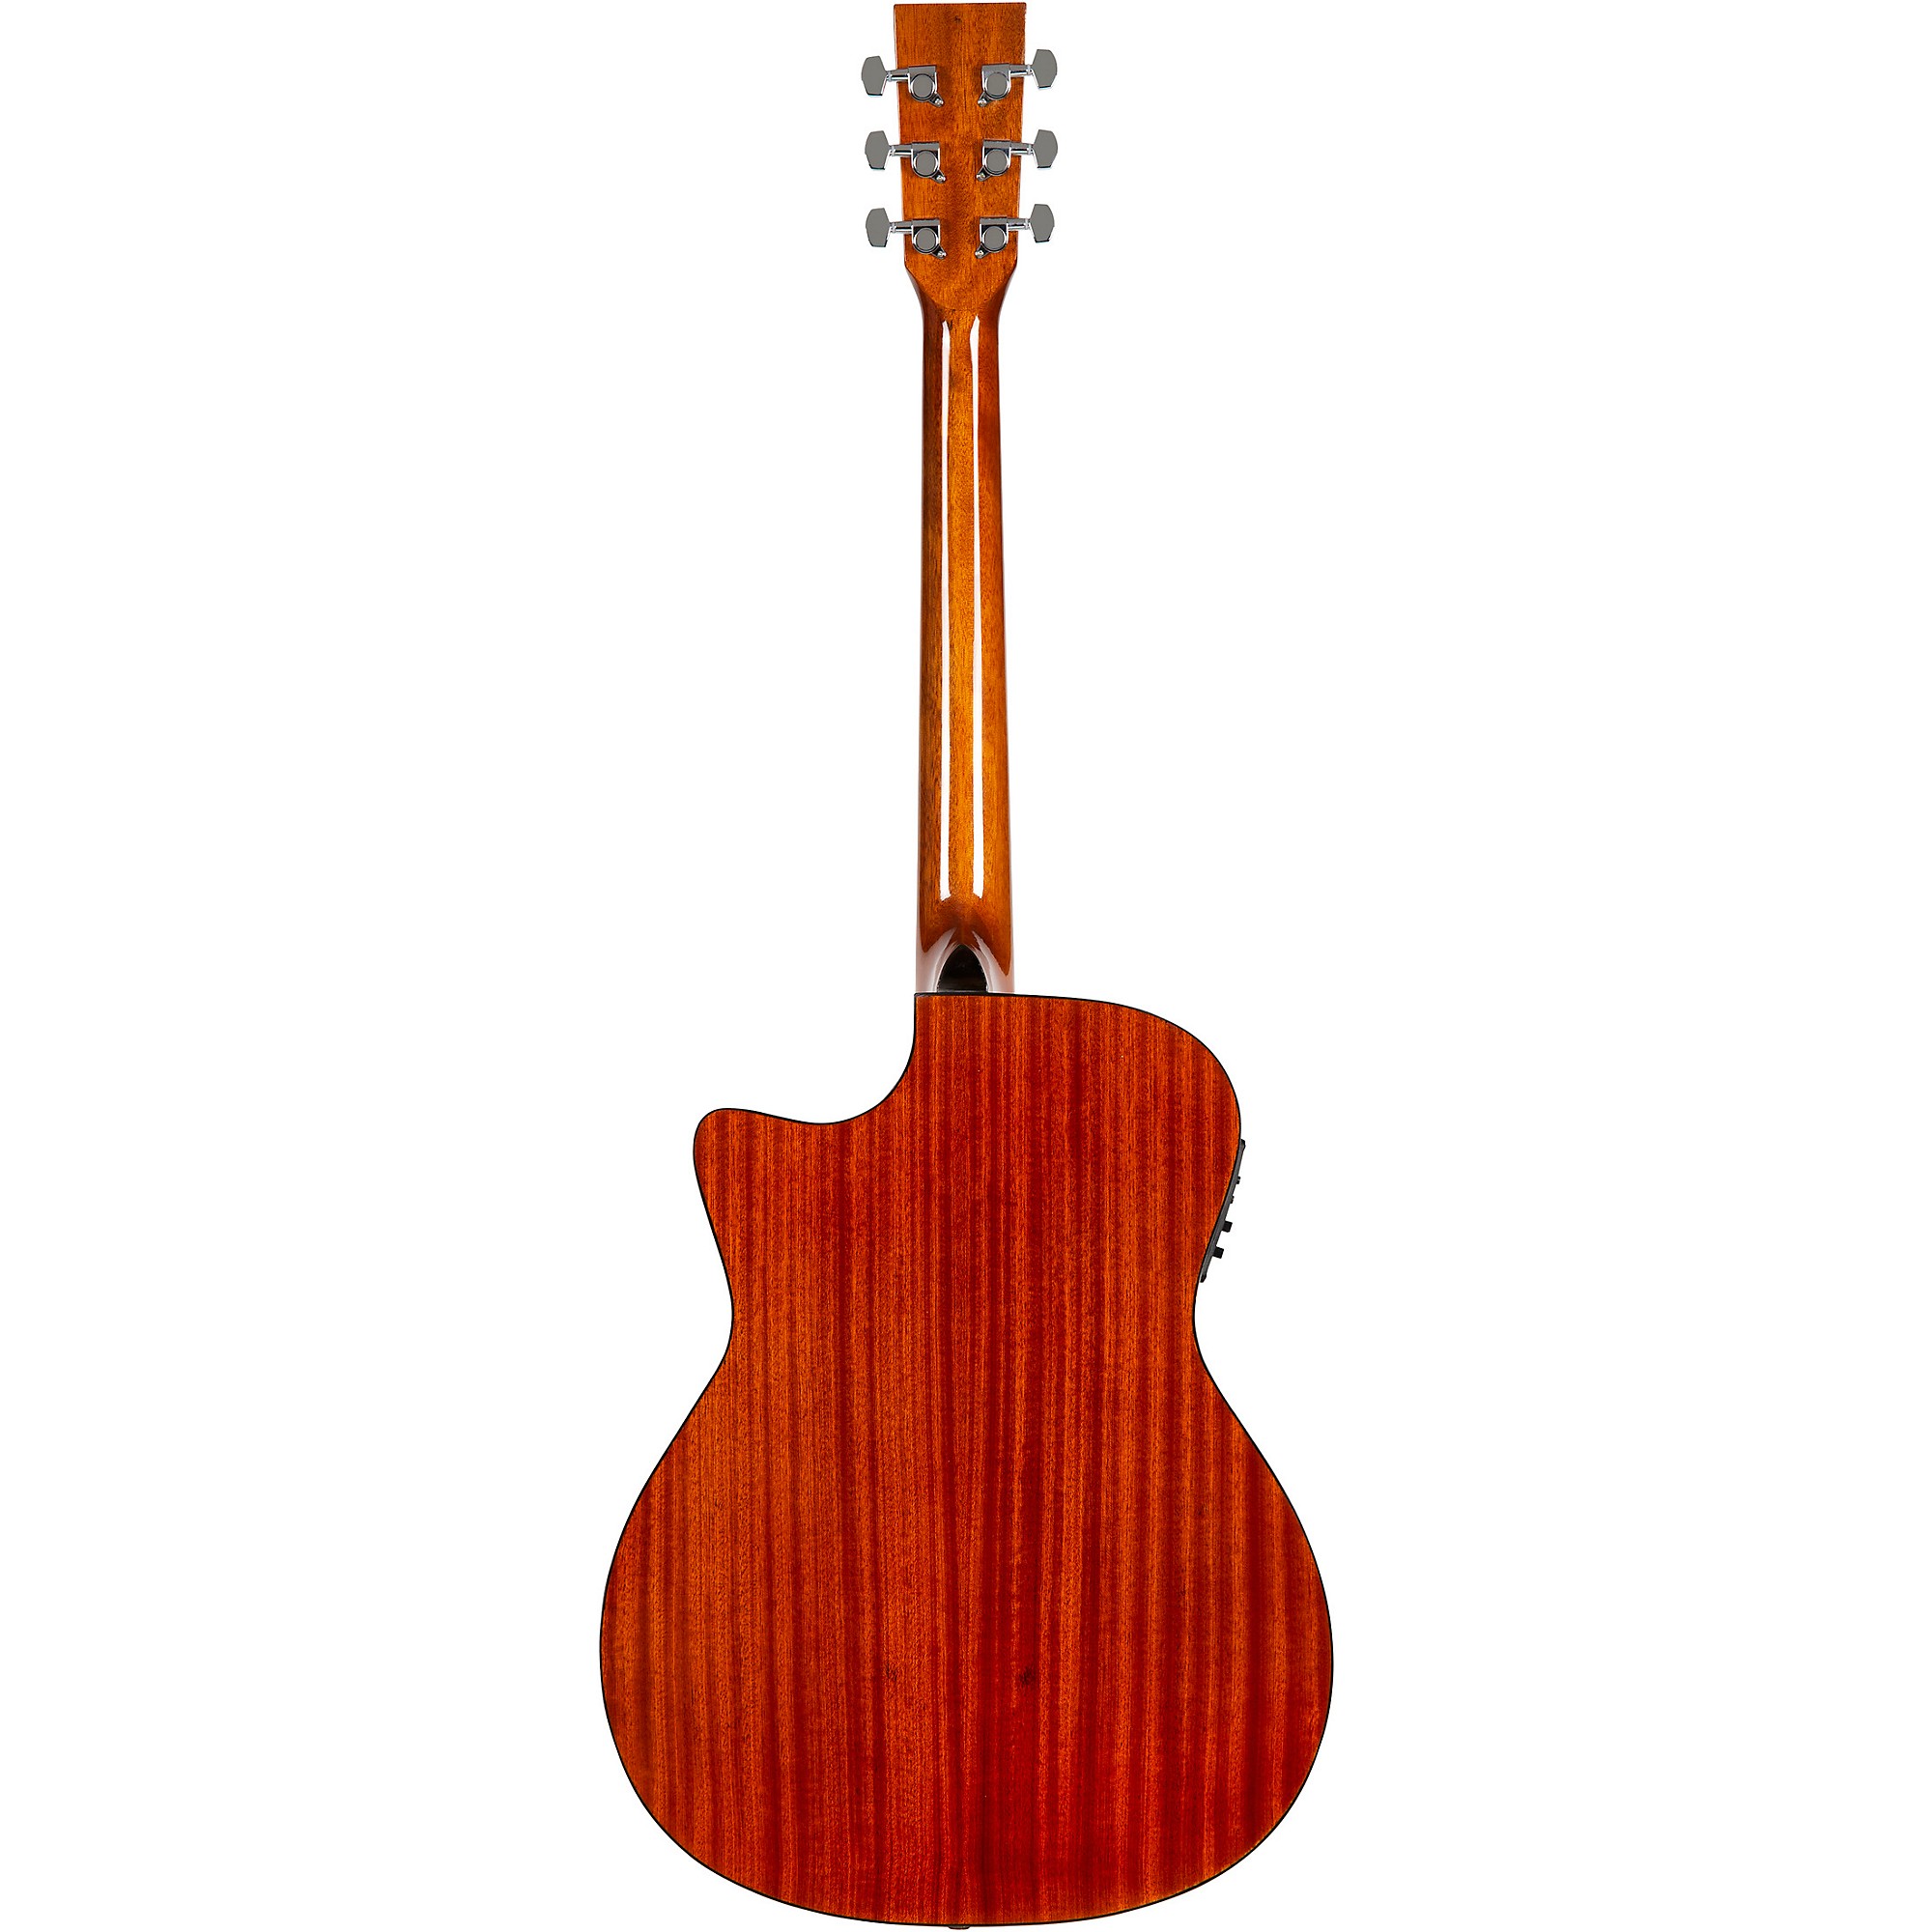 Акустически-электрическая гитара Rogue RA-090 Concert Cutaway из красного дерева